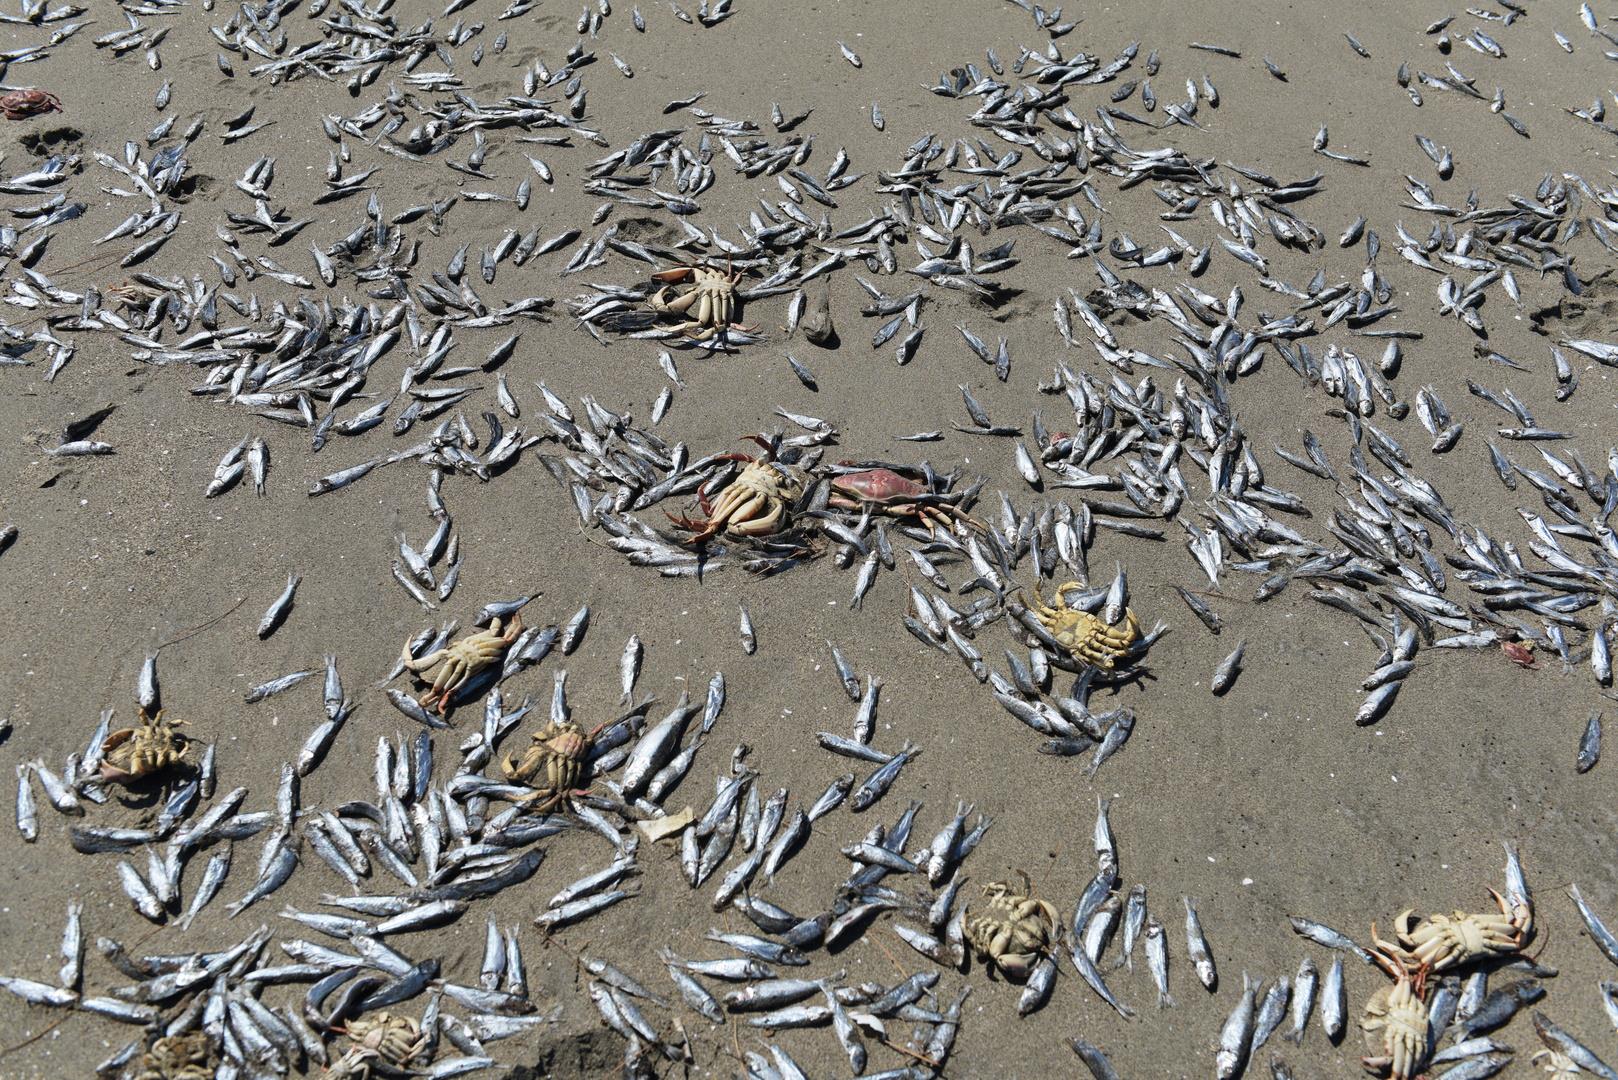 بالصور| نفوق مئات الأطنان من الأسماك على شواطئ تشيلي | بوابة أخبار اليوم الإلكترونية